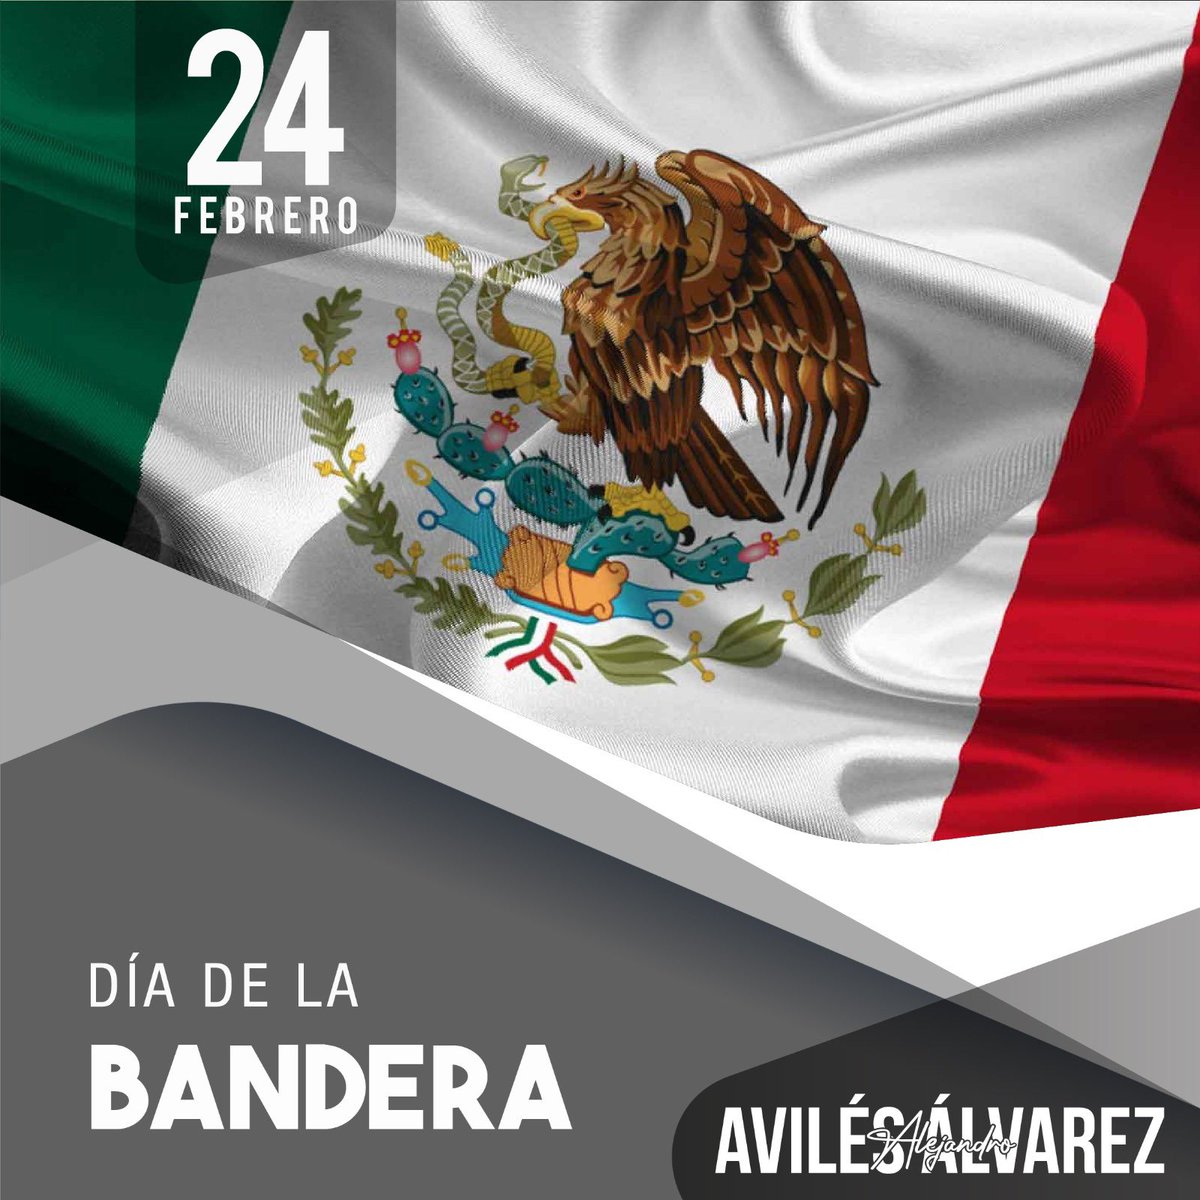 Orgullosos de ser mexicanos este #24DeFebrero conmemoramos, a nuestra #BanderaNacional, símbolo de unidad, libertad, justicia y nacionalidad.

#DíaDeLaBandera #México